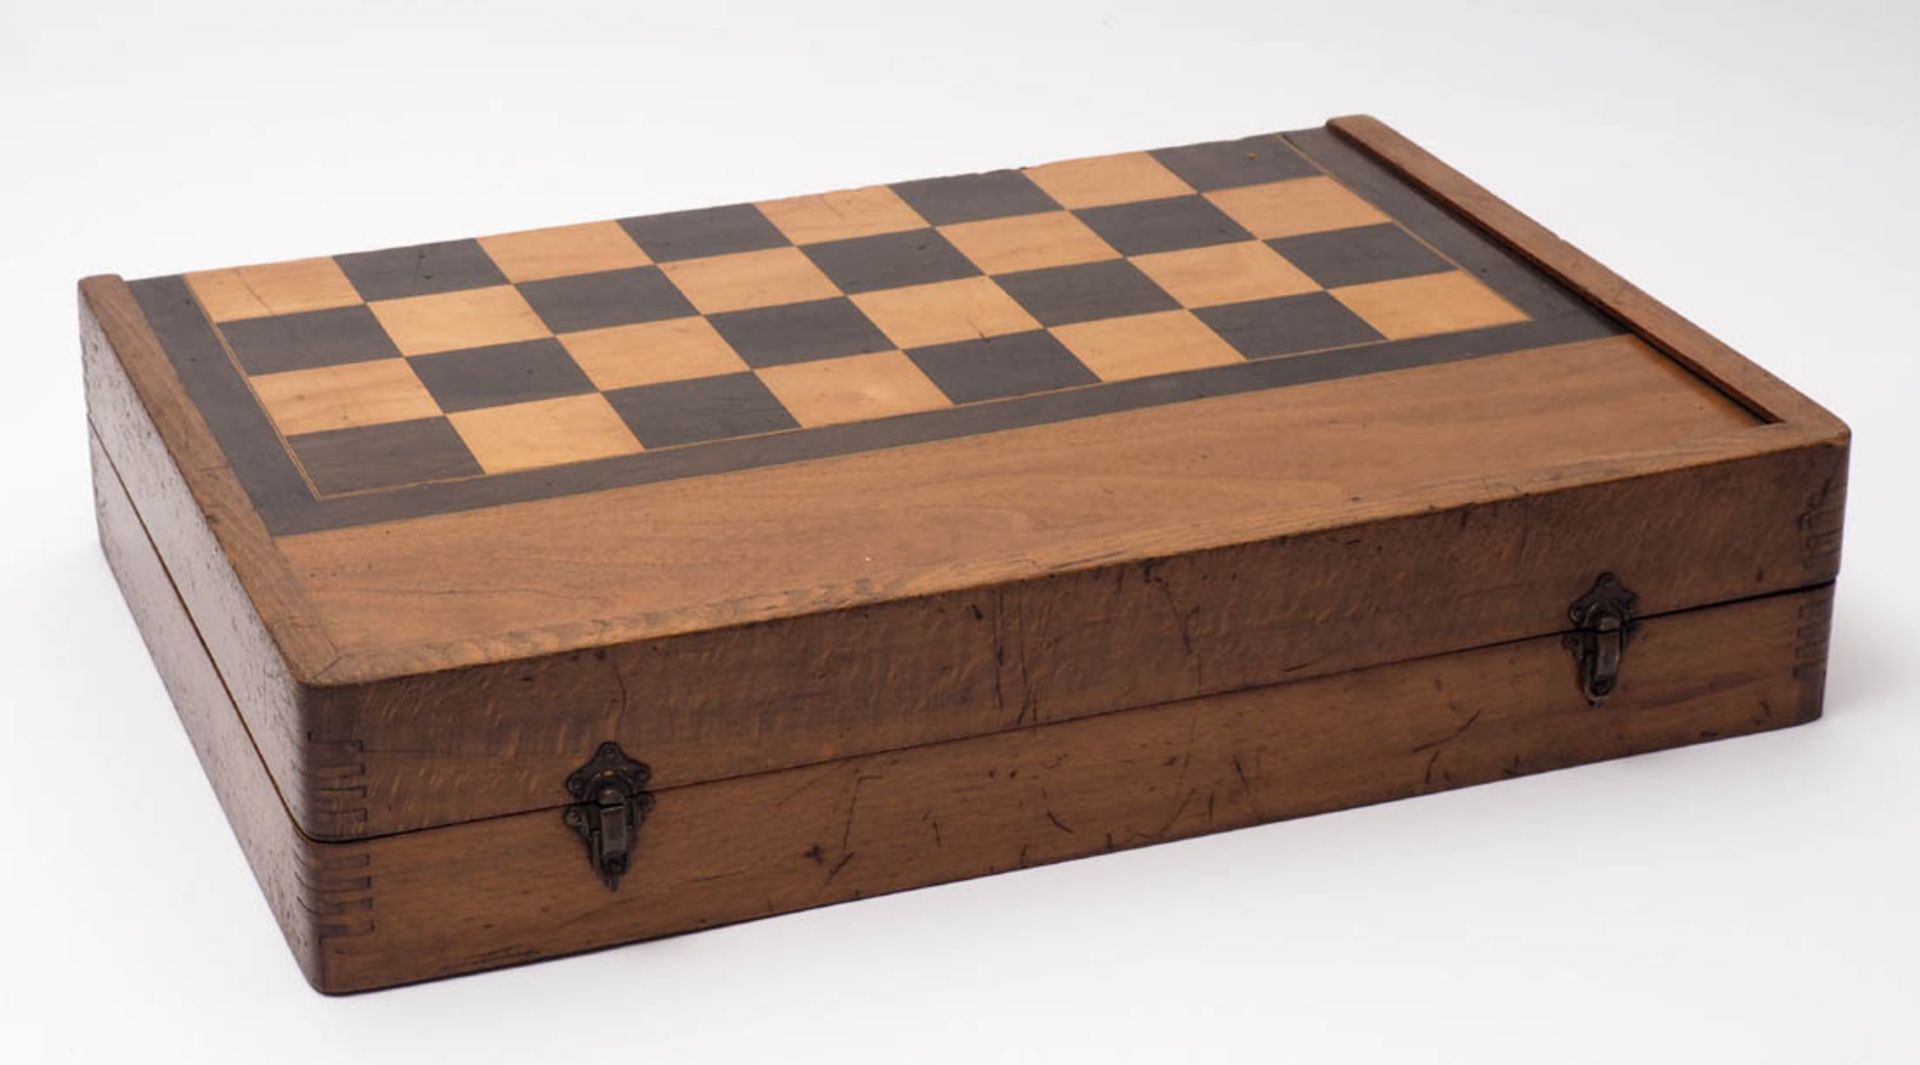 Spielkasten Schach und Backgammon. Mit Figuren, Spielsteinen und zwei Würfelbechern. Maße des - Bild 2 aus 2